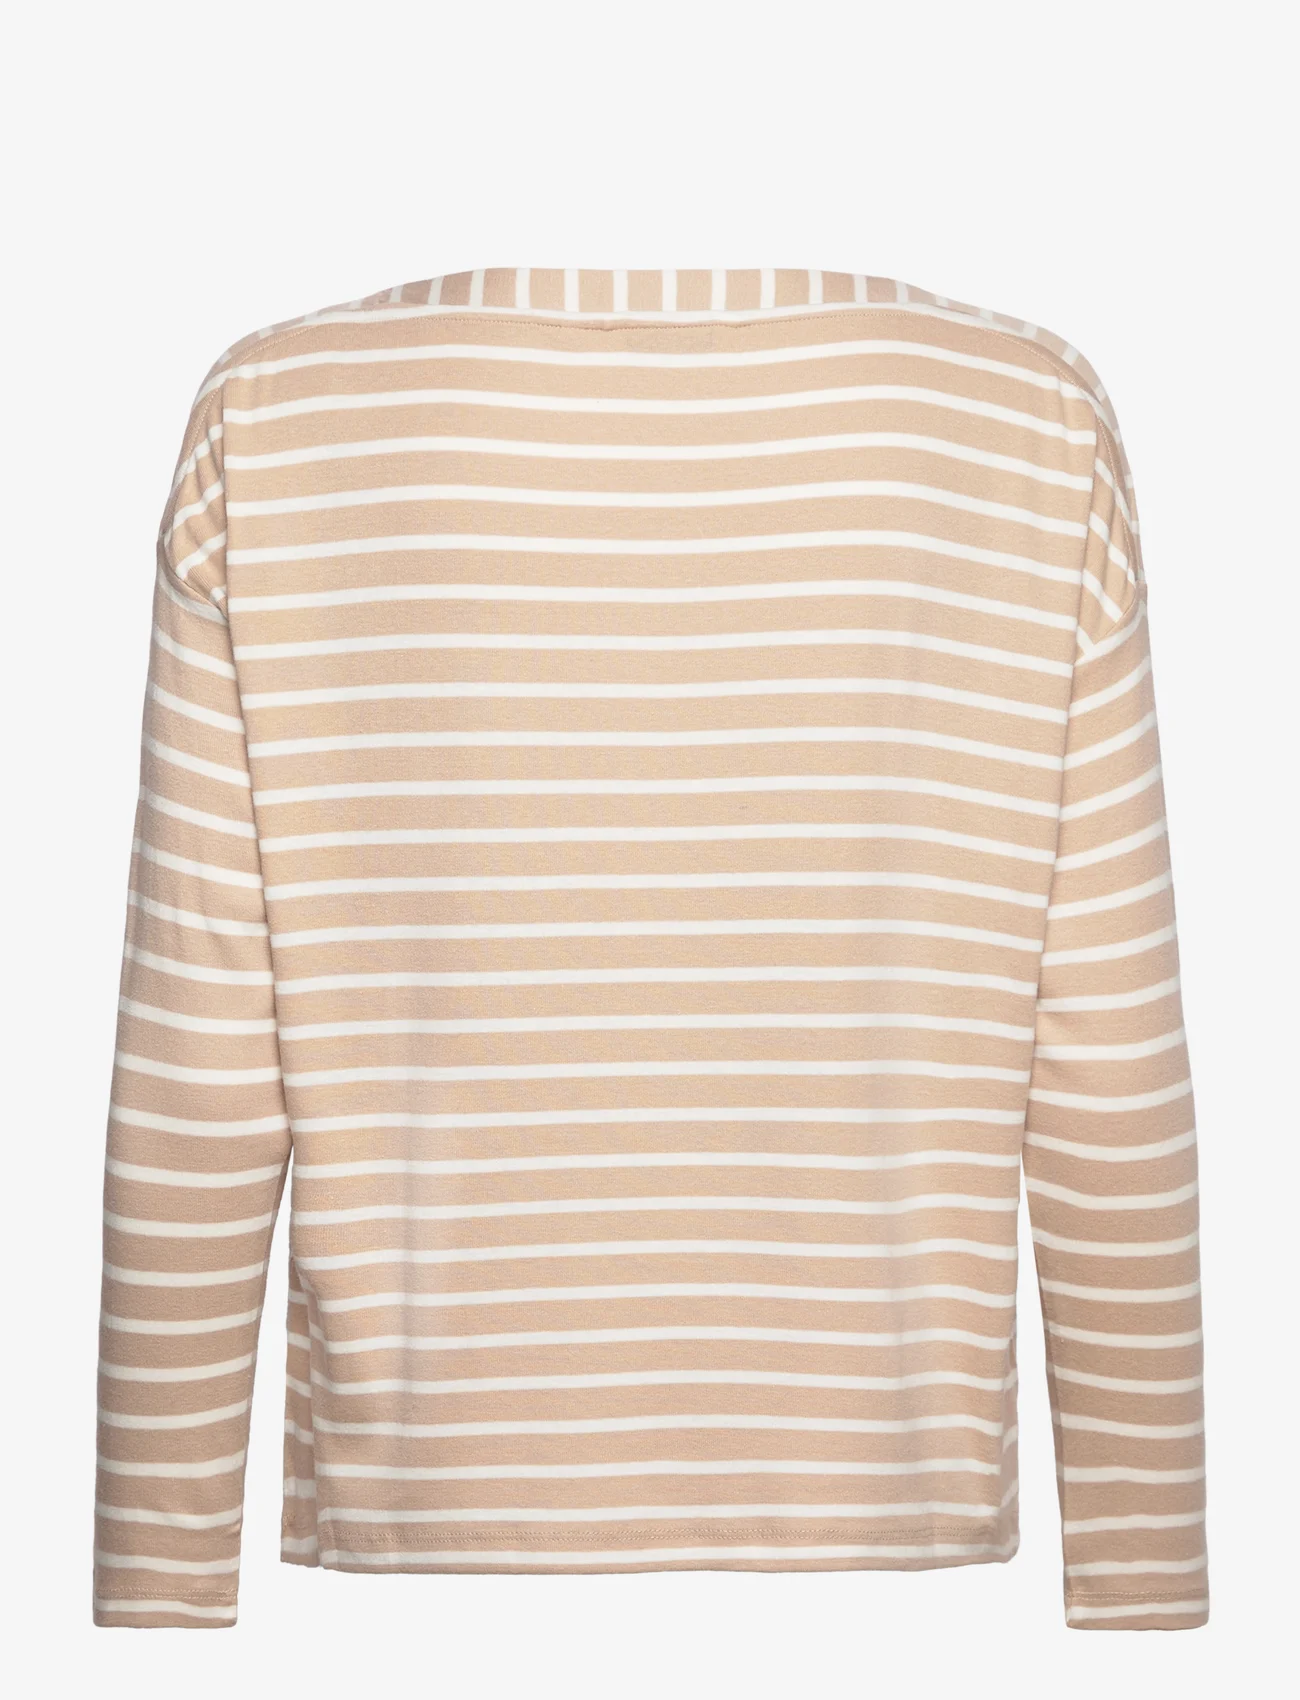 Tom Tailor - T-shirt stripe - lägsta priserna - beige offwhite stripe - 1